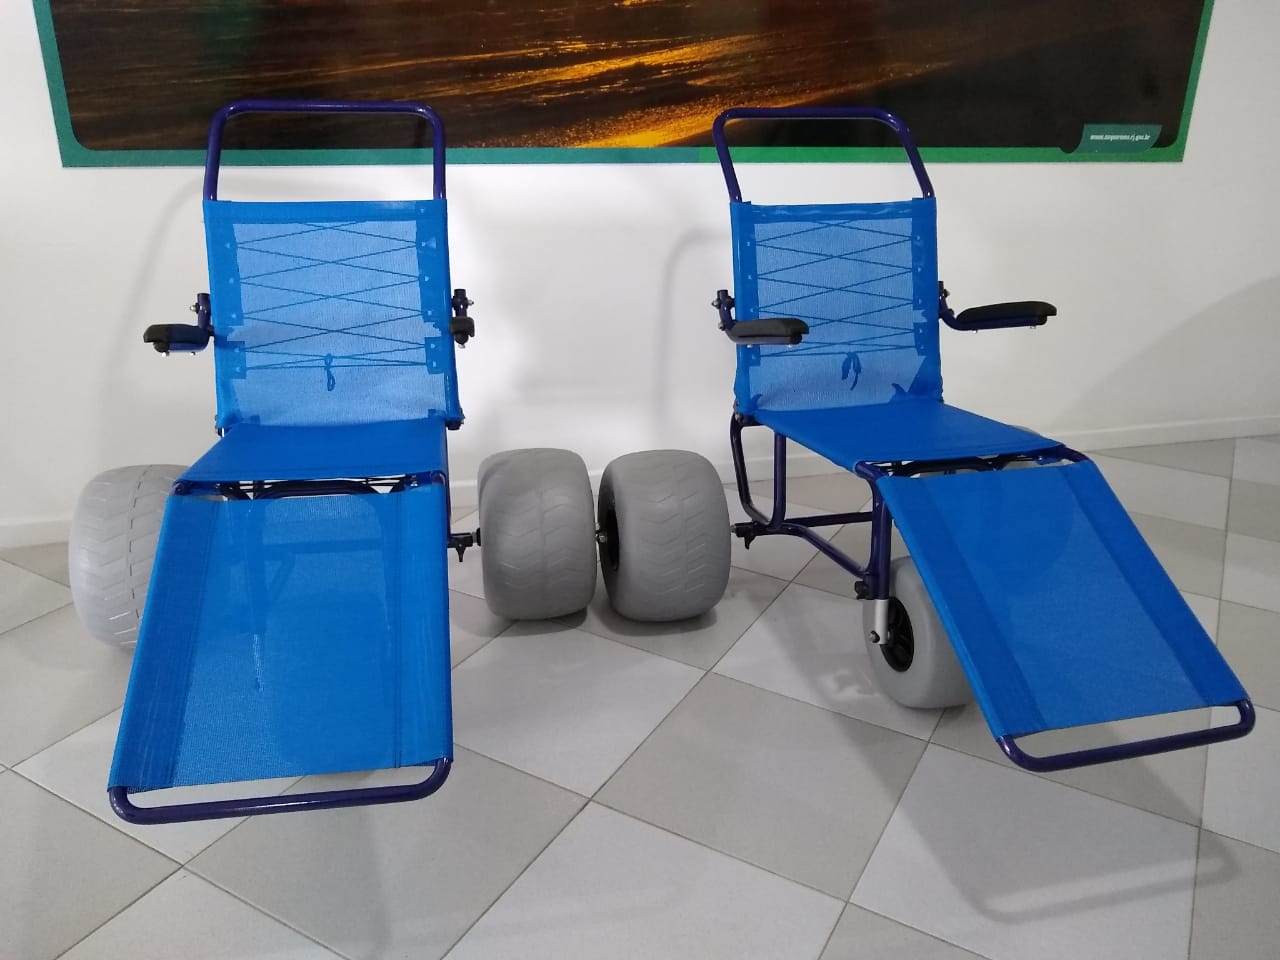 Prefeitura de Saquarema adquire cadeiras de rodas anfíbias